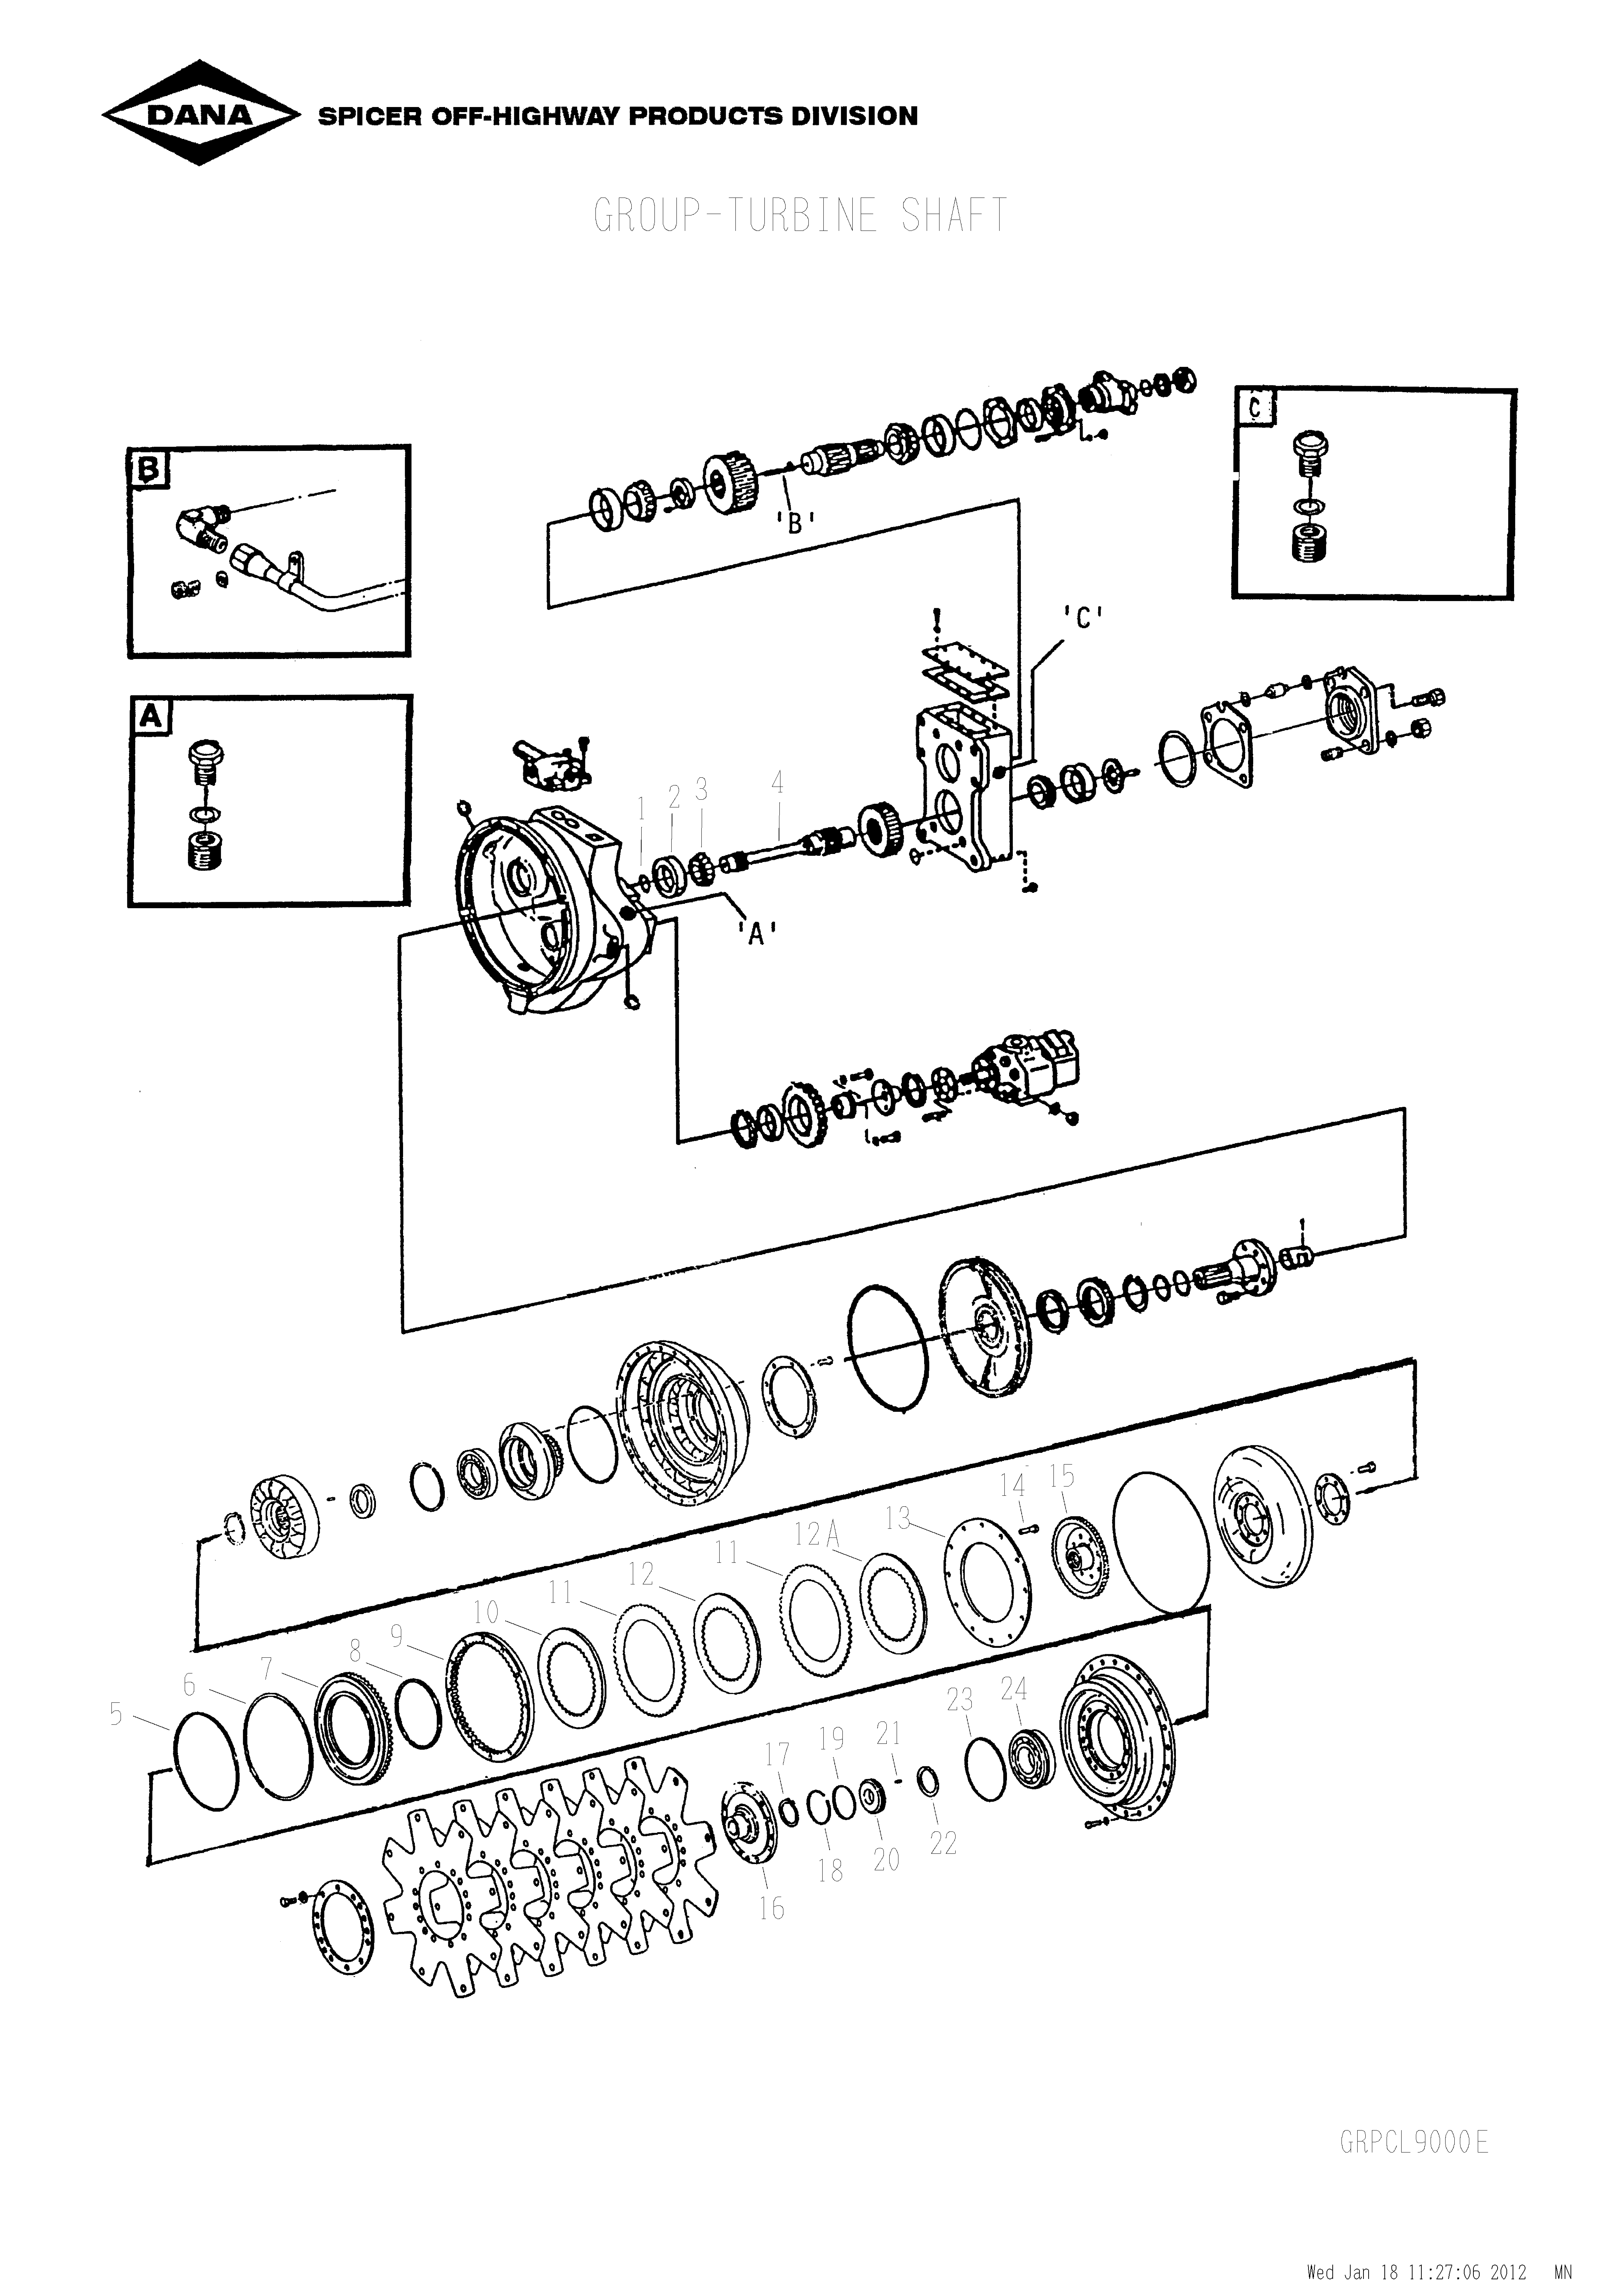 drawing for SCHOEMA, SCHOETTLER MASCHINENFABRIK K24.000071 - RING